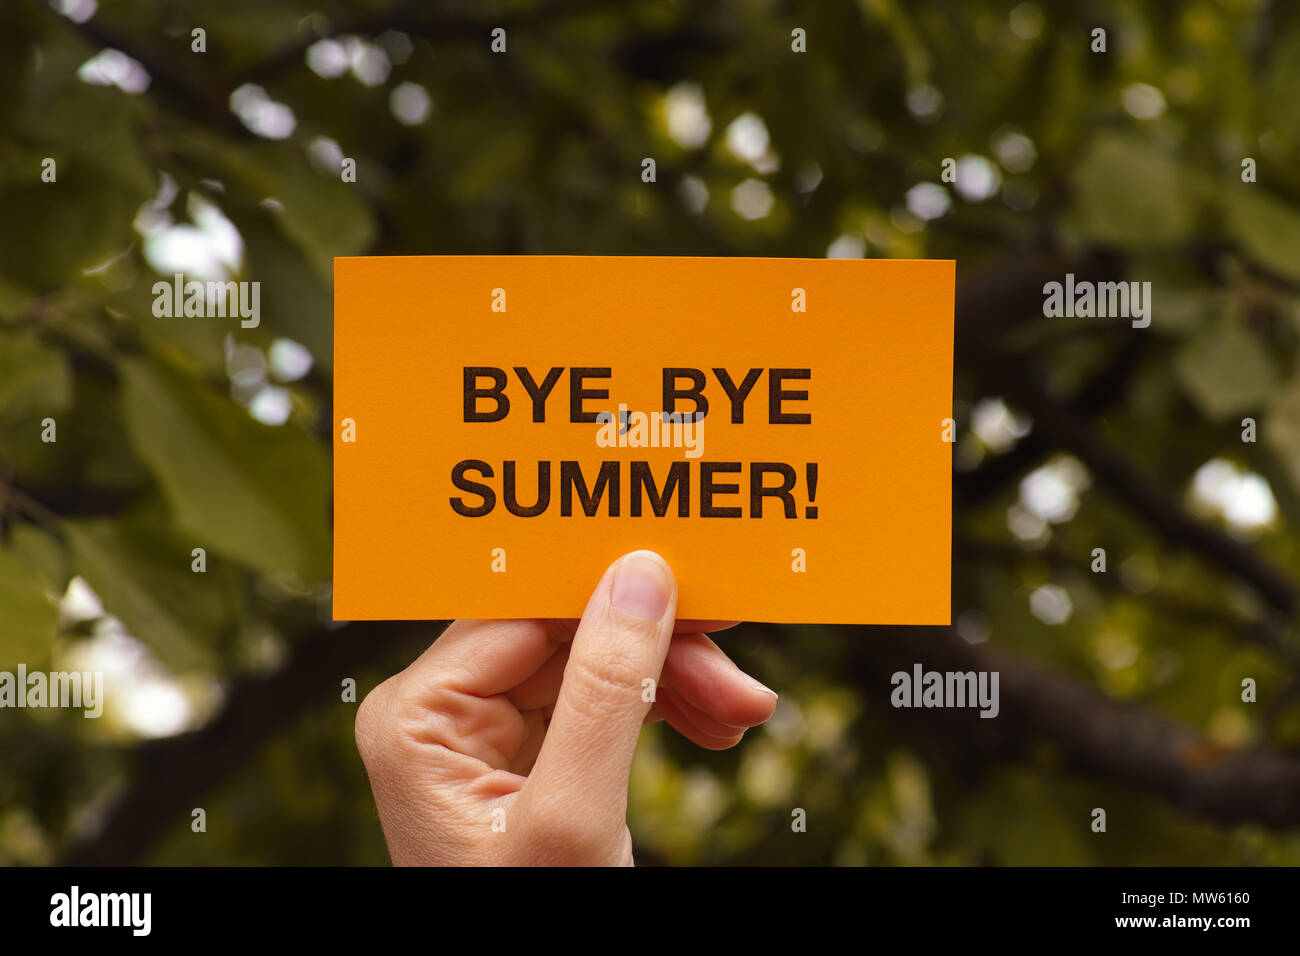 Bye, bye l'été ! Mains courantes feuille de papier jaune qui dit Bye, bye l'été !. Close up. Banque D'Images